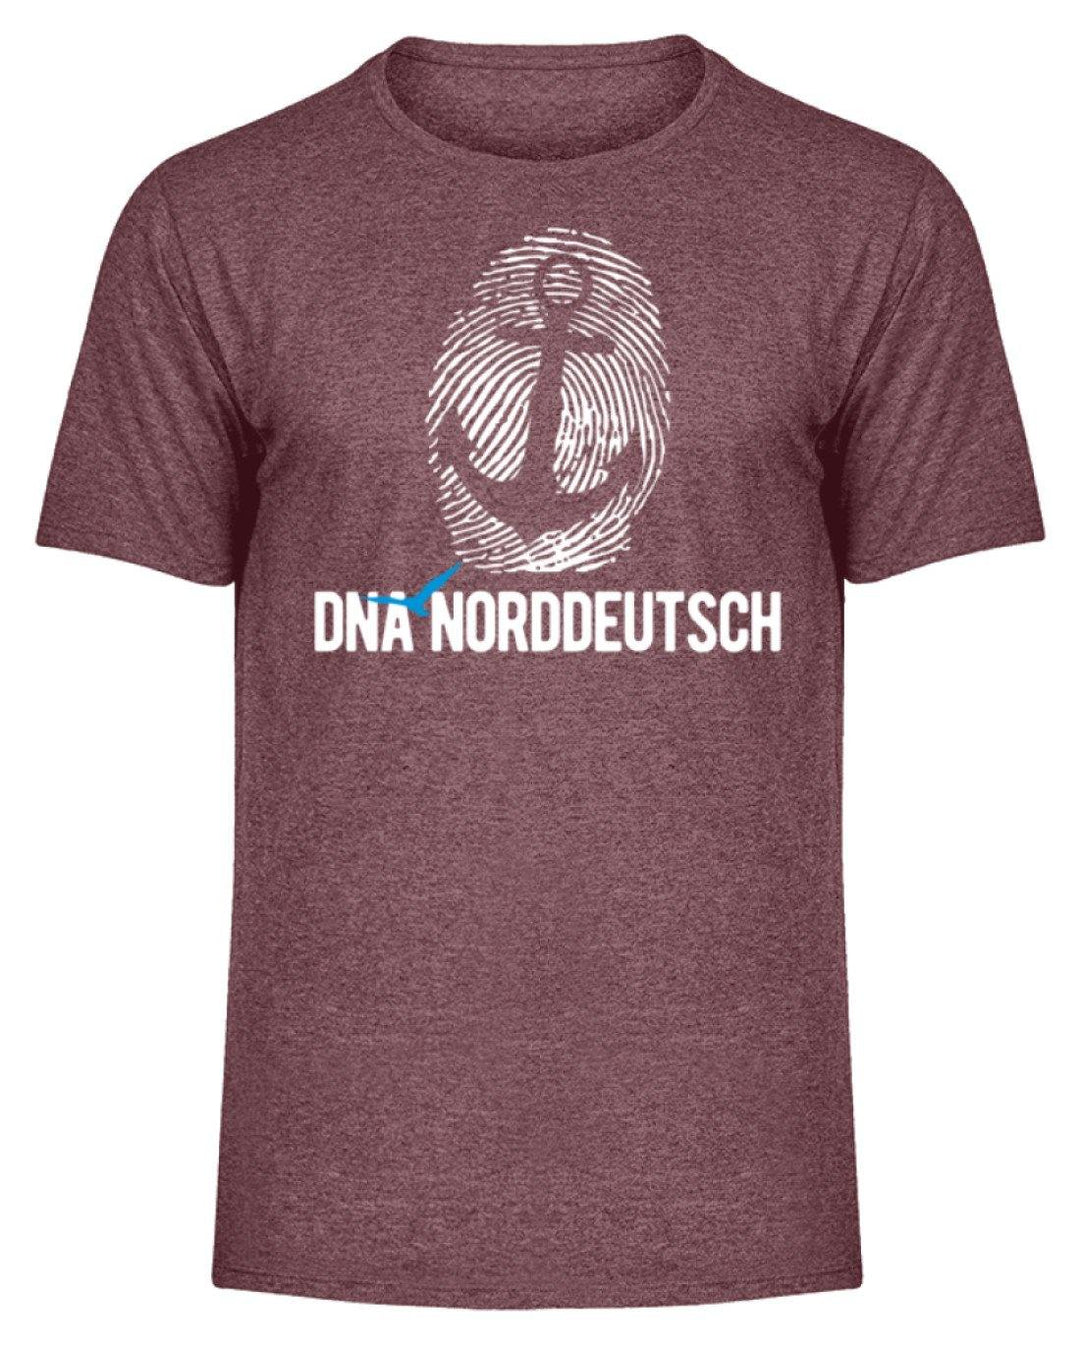 DNA Norddeutsch  - Herren Melange Shirt - Words on Shirts Sag es mit dem Mittelfinger Shirts Hoodies Sweatshirt Taschen Gymsack Spruch Sprüche Statement